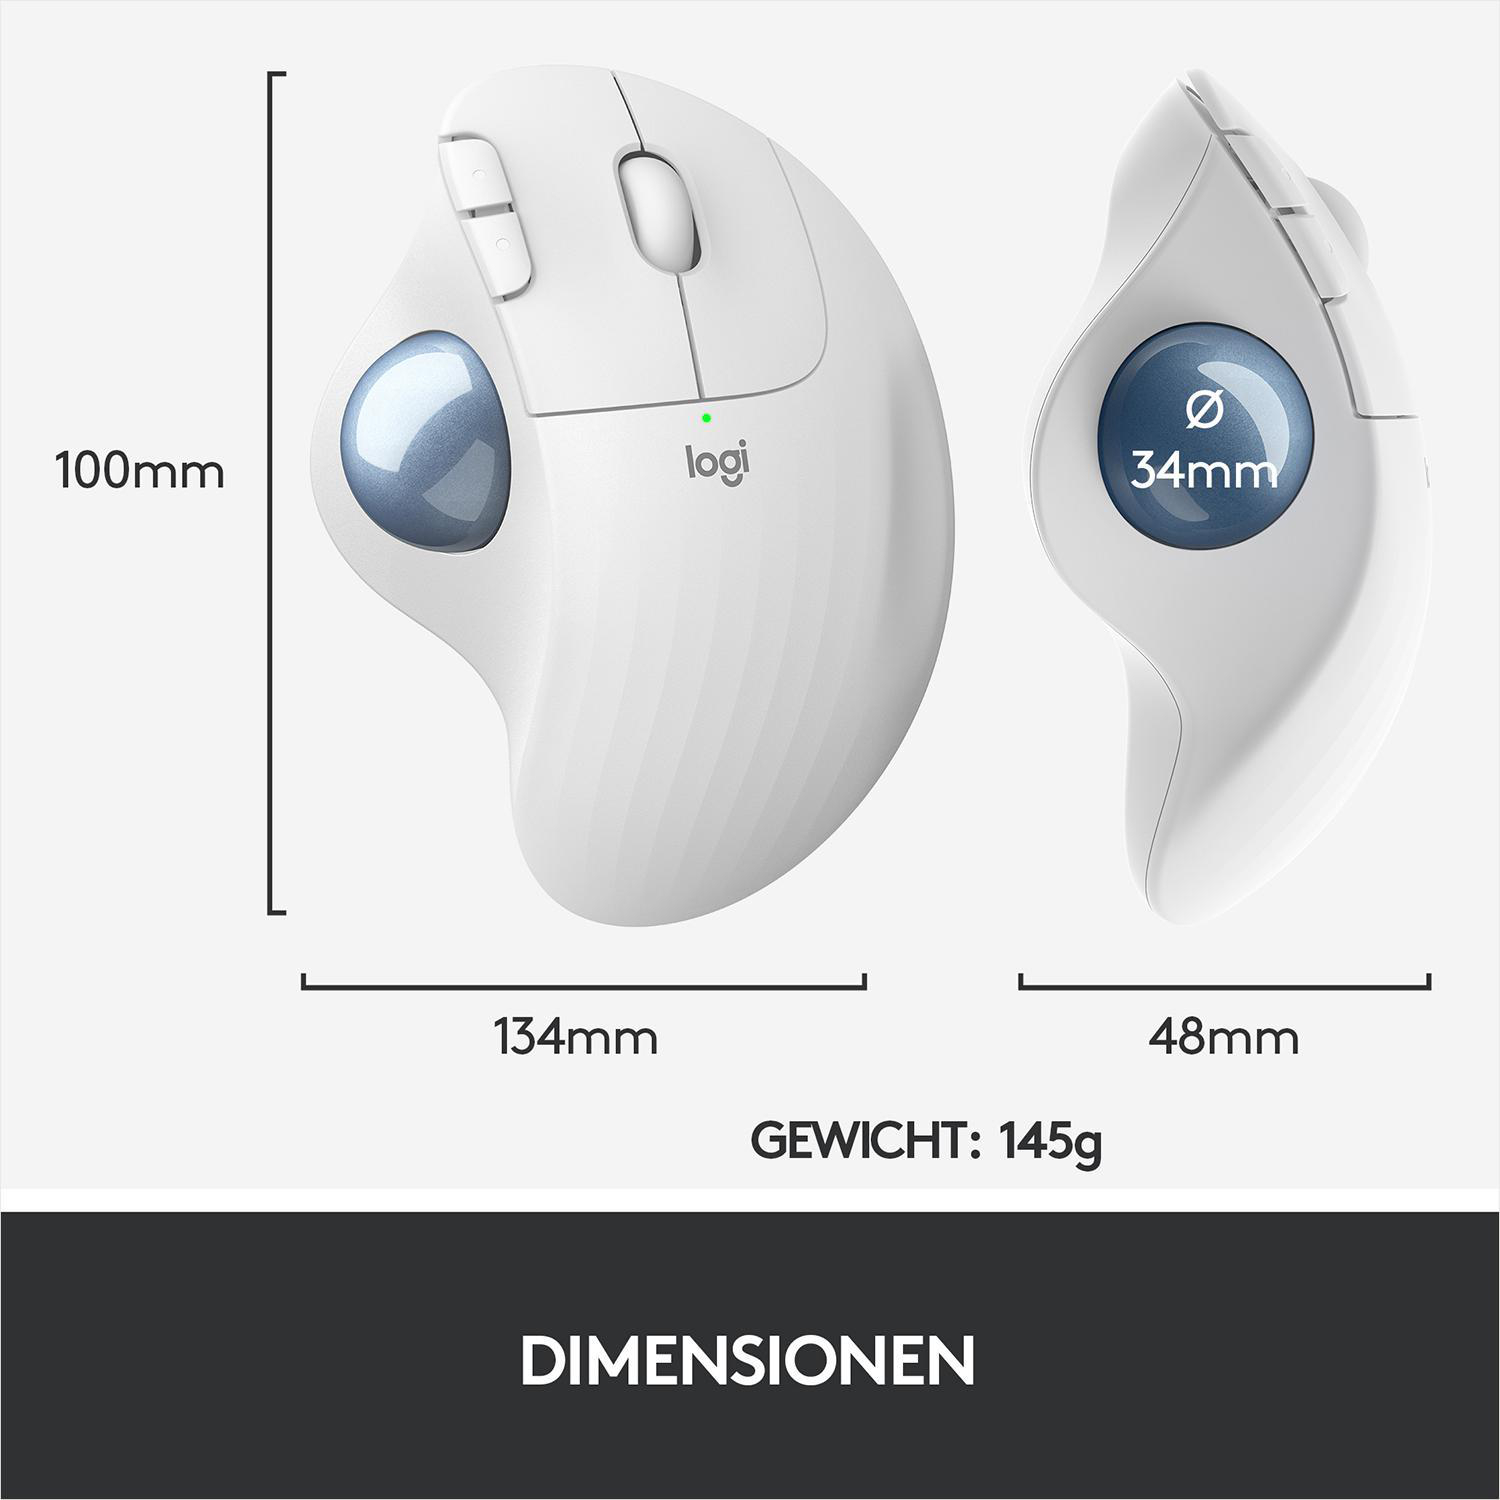 LOGITECH ERGO Ergo-Maus, Design, Windows, Wireless Weiß & PC - Trackball Maus M575 ergonomisches Mac